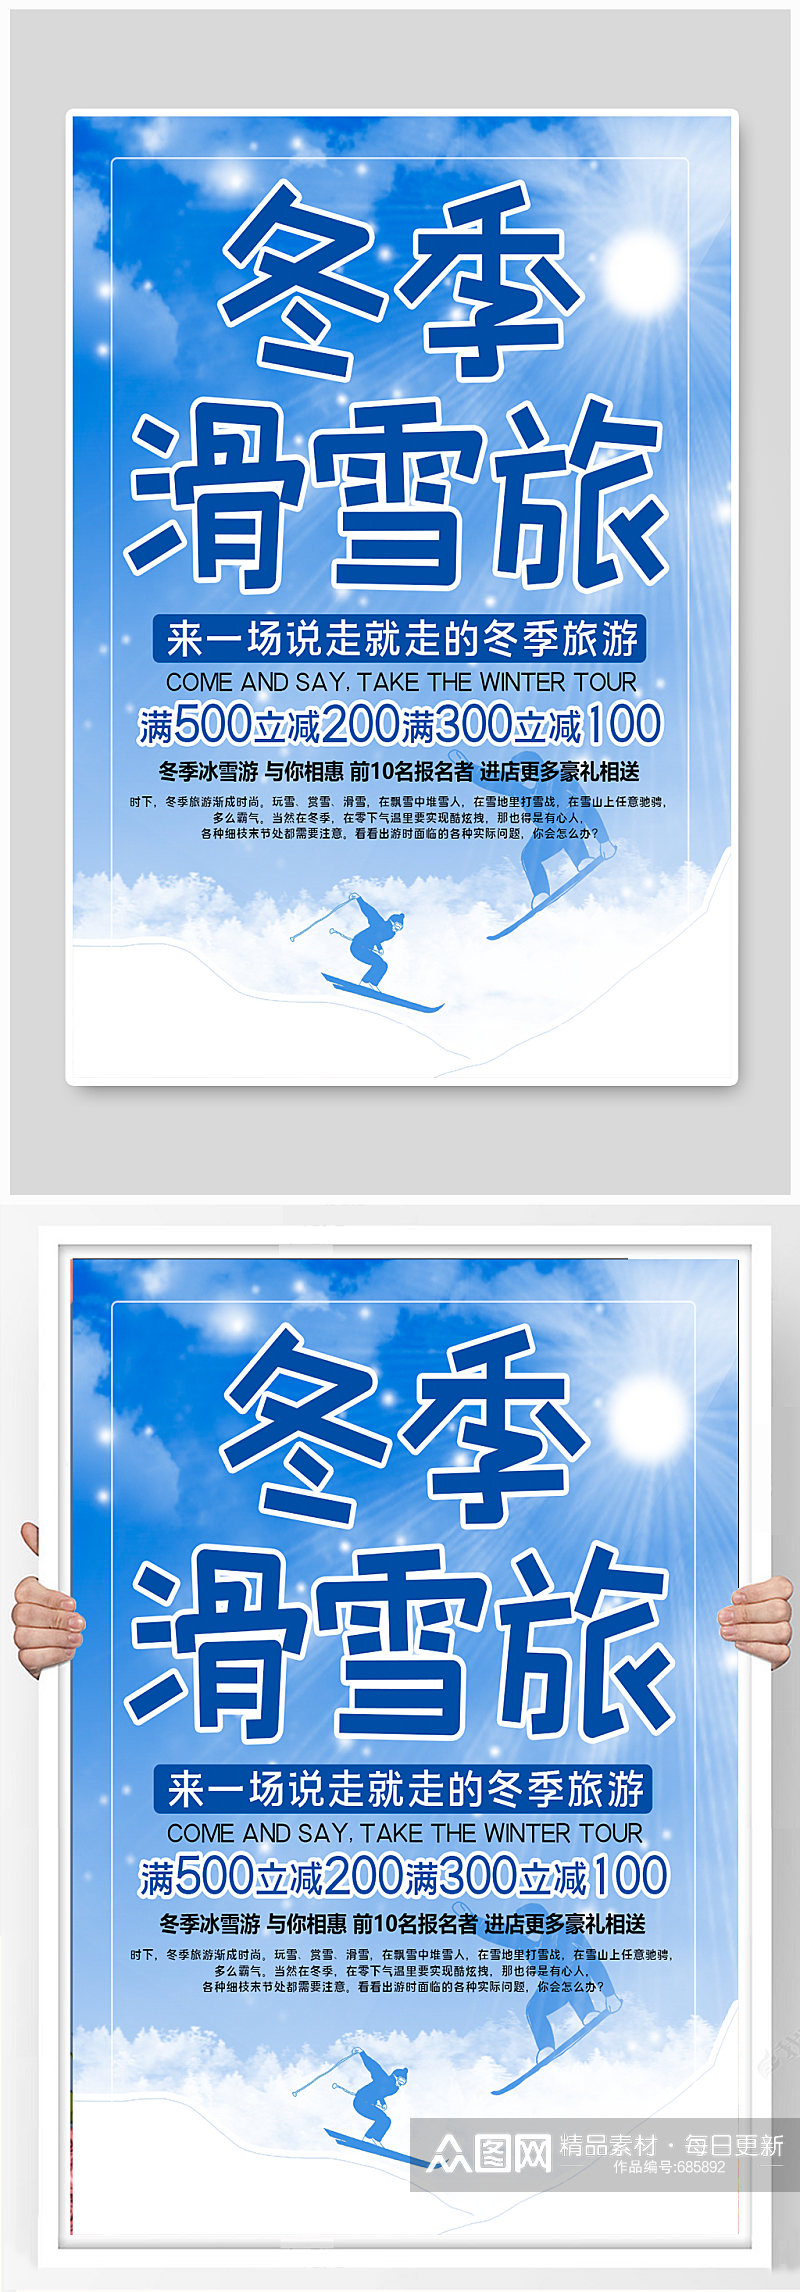 冬天滑雪运动旅游海报素材